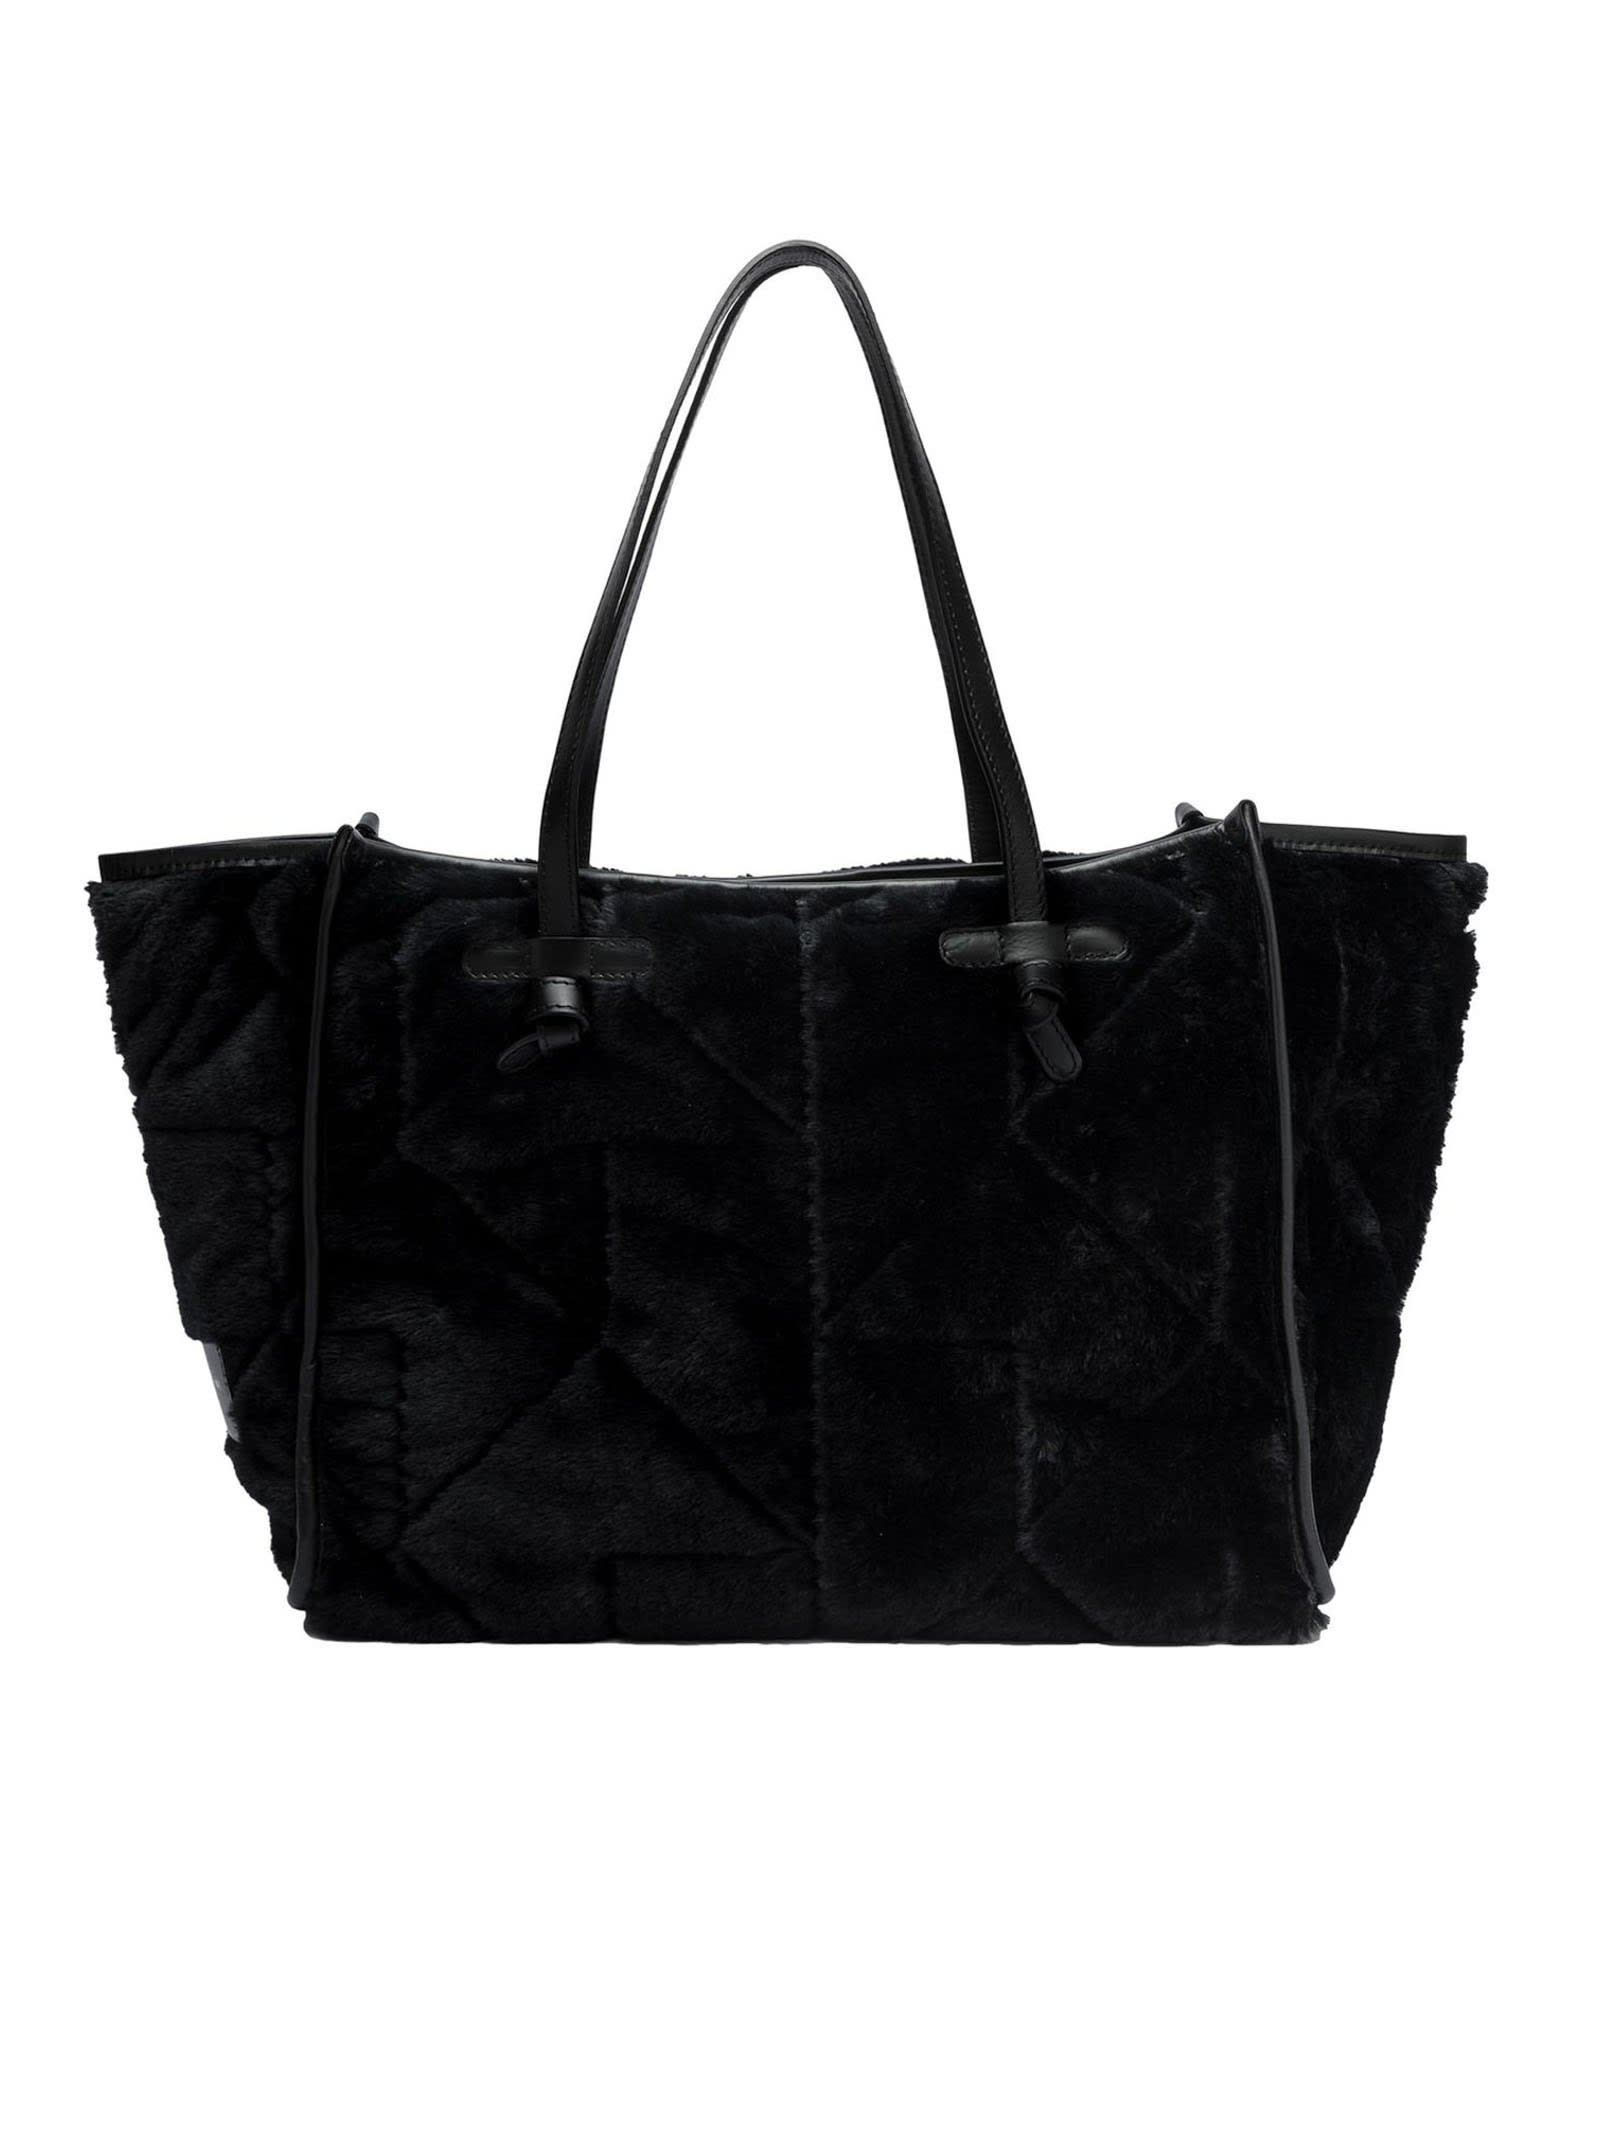 Gianni Chiarini Marcella Tote Bag In Double-layer Fabric In Black